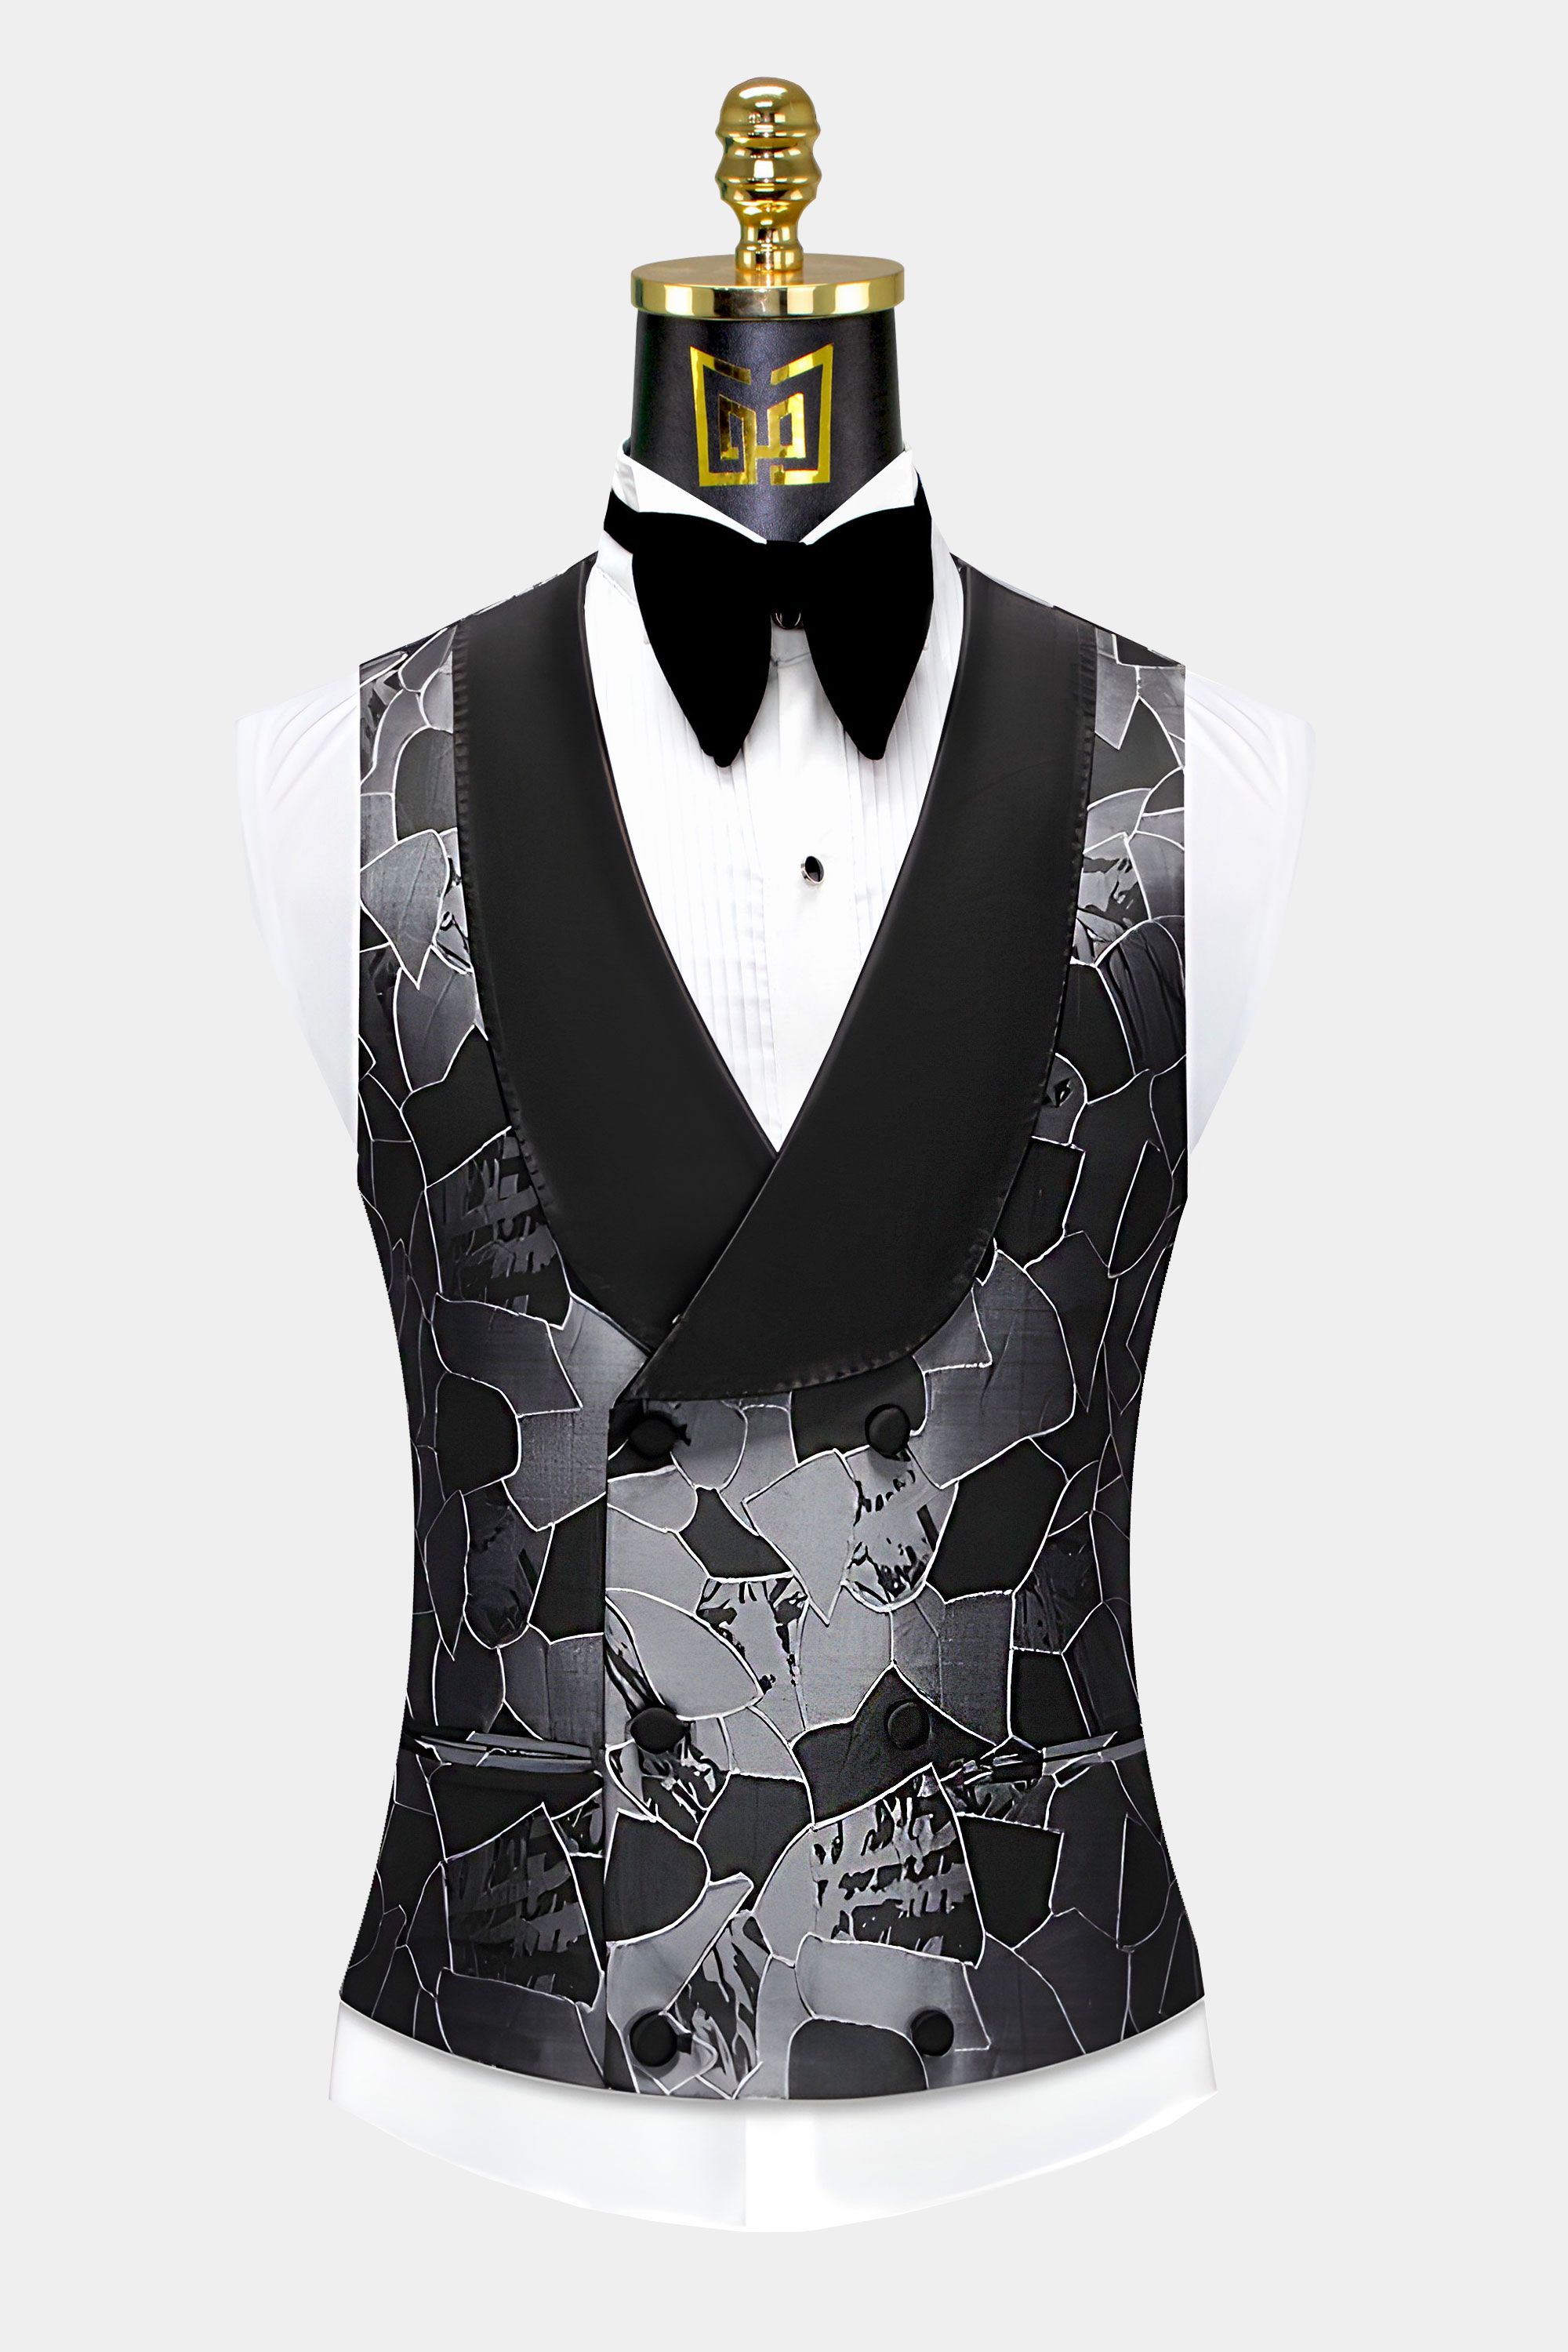 Grey-and-Black-Tuxedo-Vest-from-Gentlemansguru.com